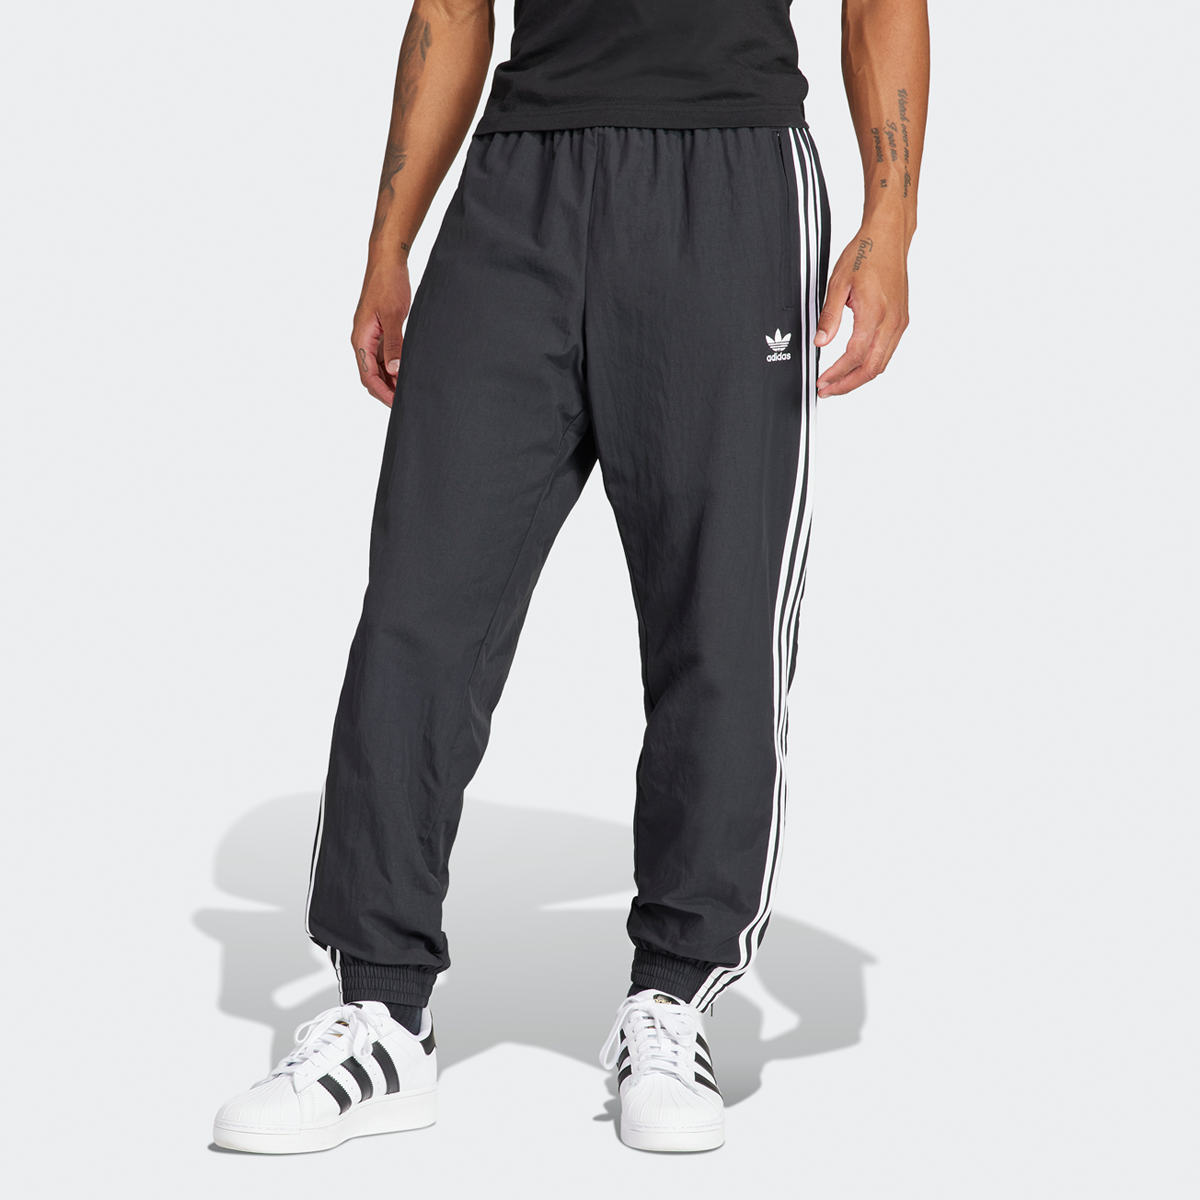 adidas Originals 3-stripes Woven Firebird Jogging Broek Trainingsbroeken Heren black maat: S beschikbare maaten:S M XL